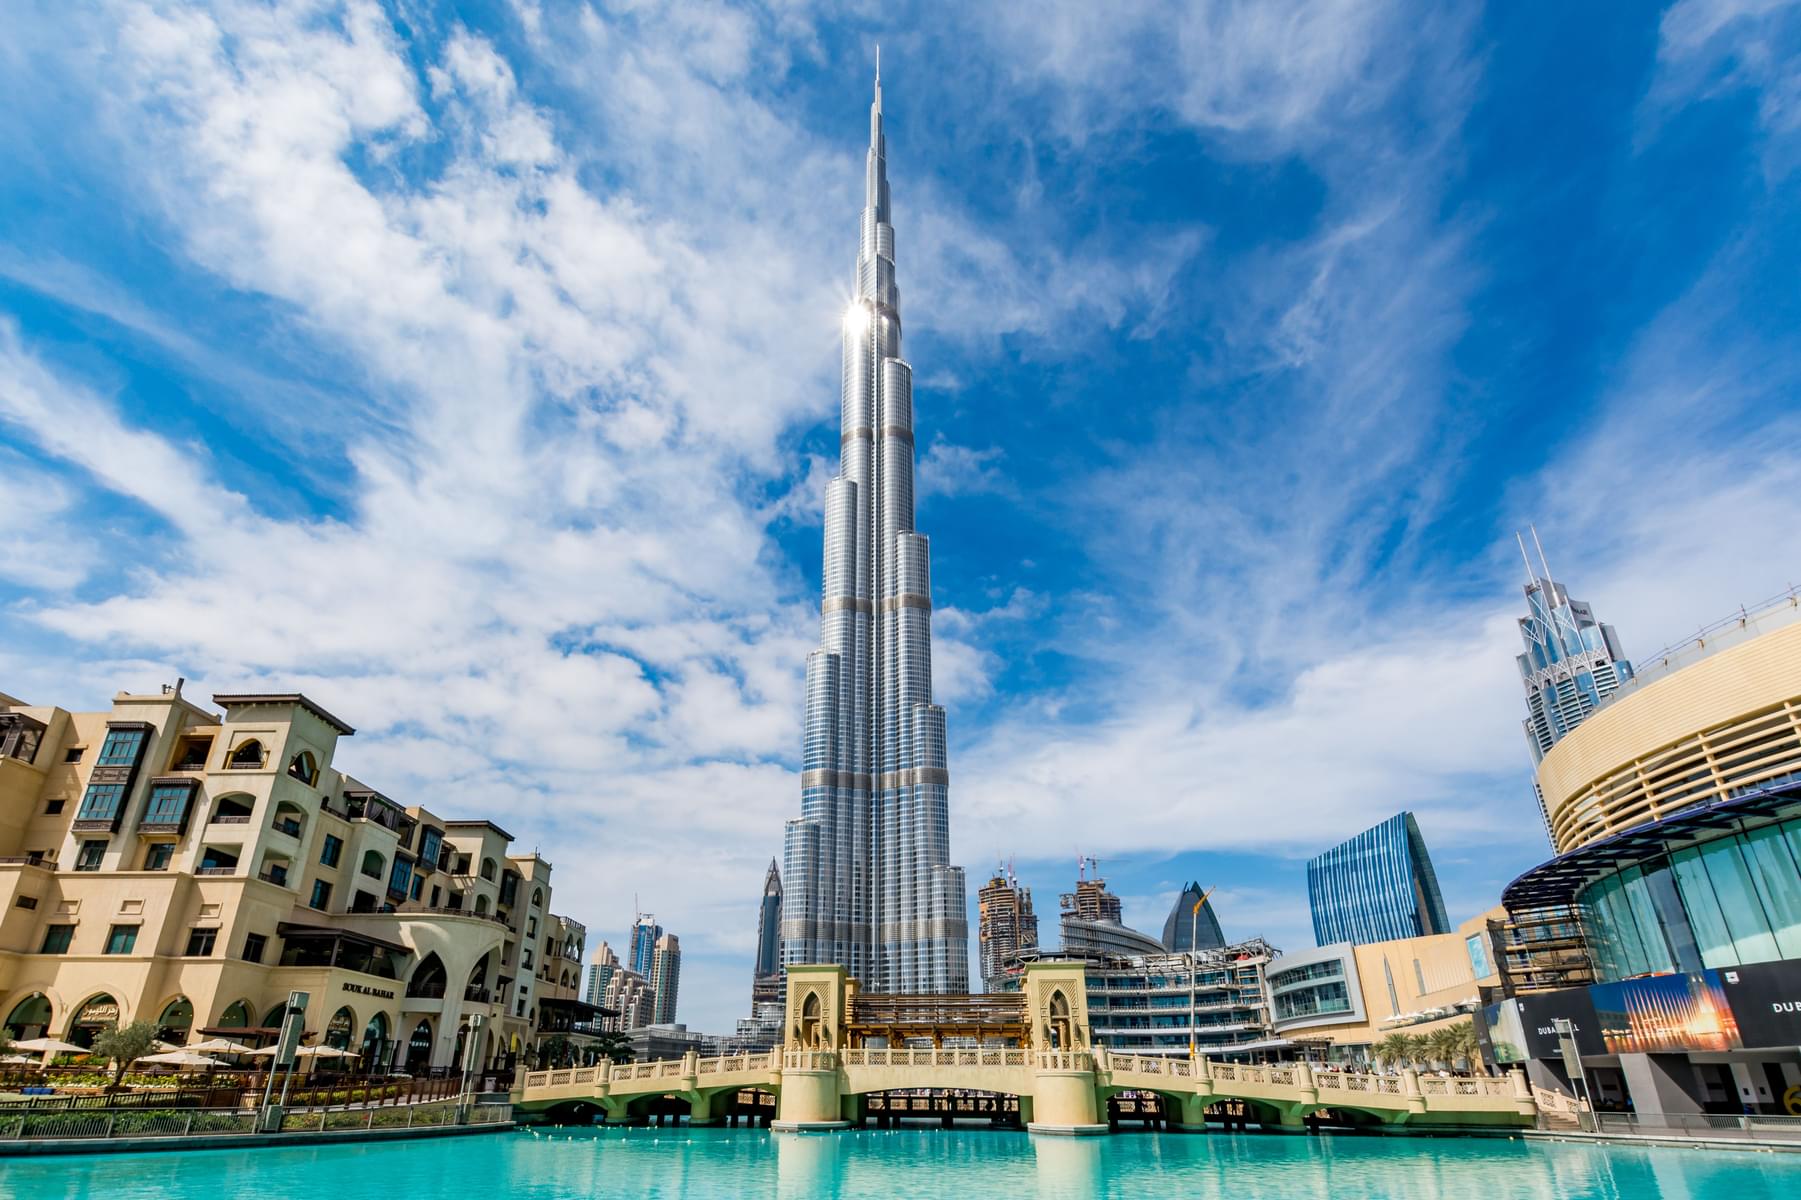 Construction Facts About Burj Khalifa